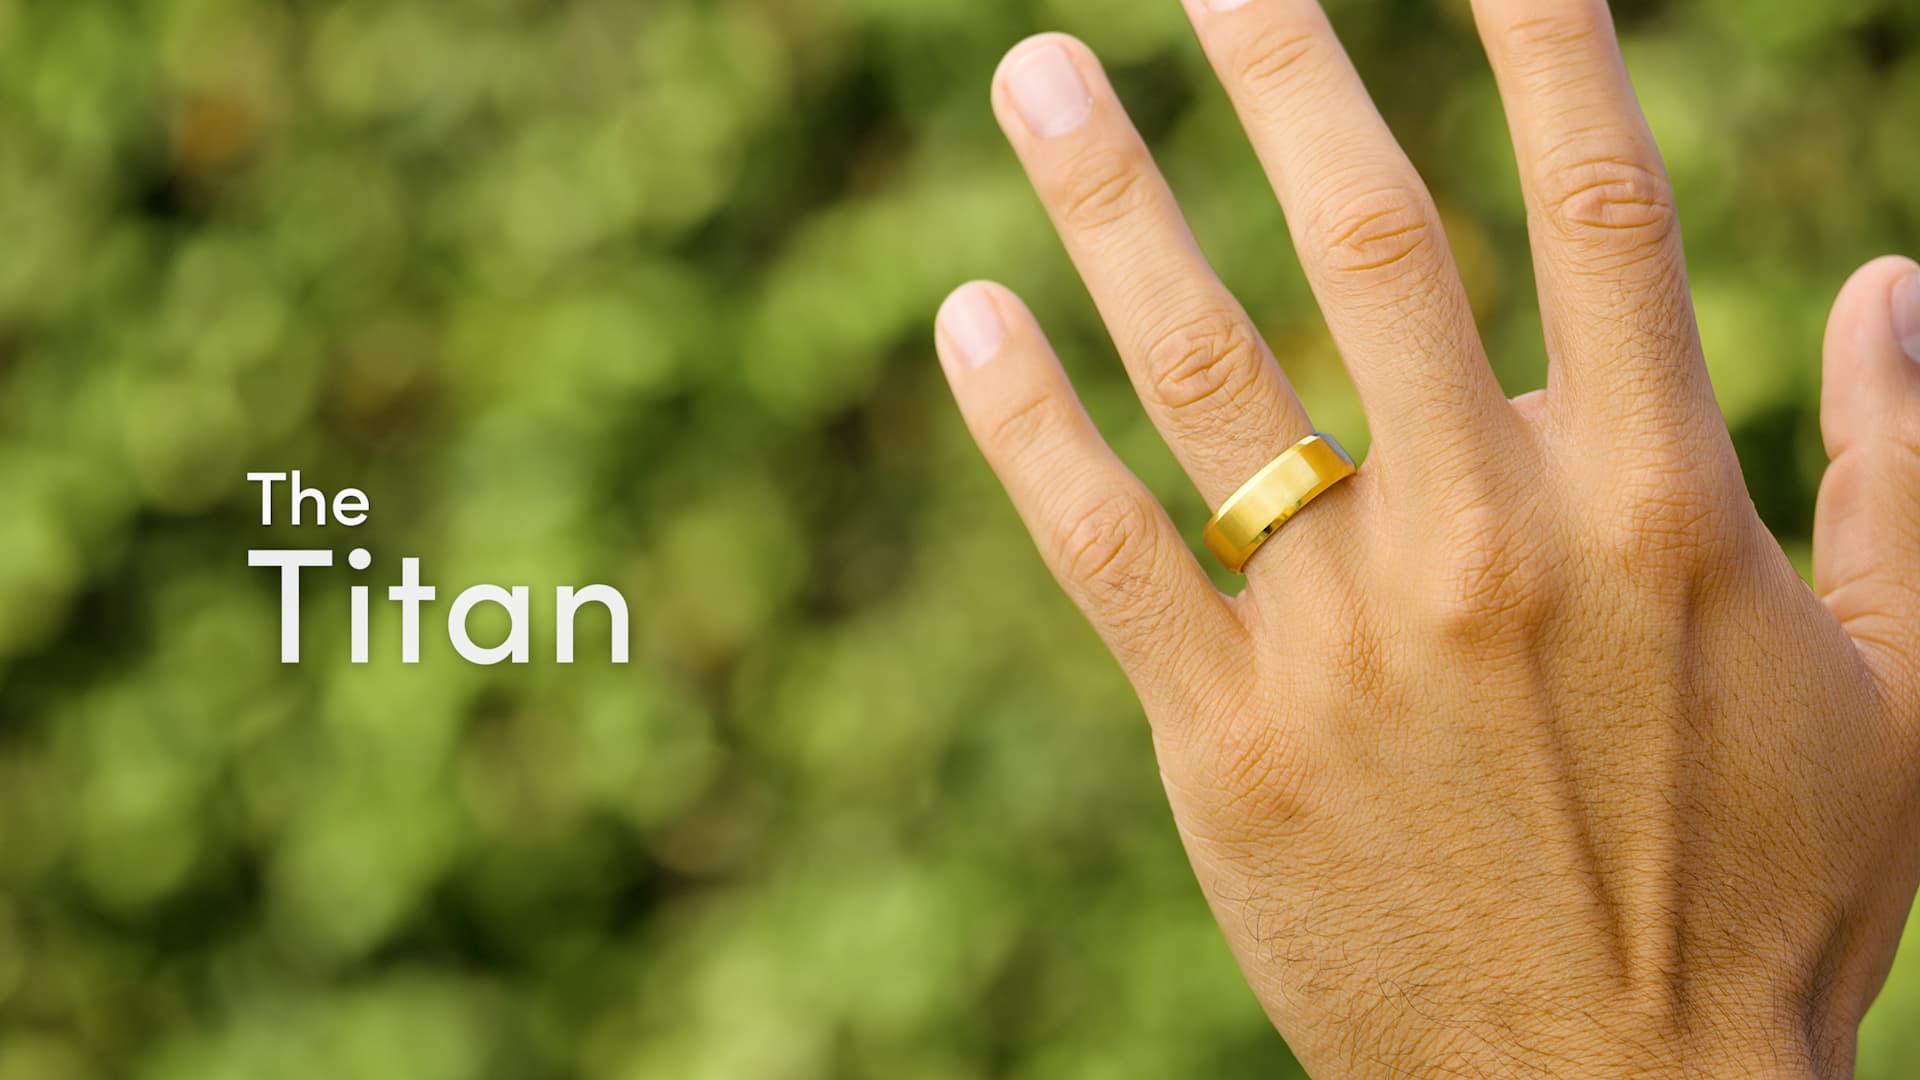 Engagement Ring Finger Ring Couple Rings Band Stainless Steel Rings Pride  Men ) | eBay